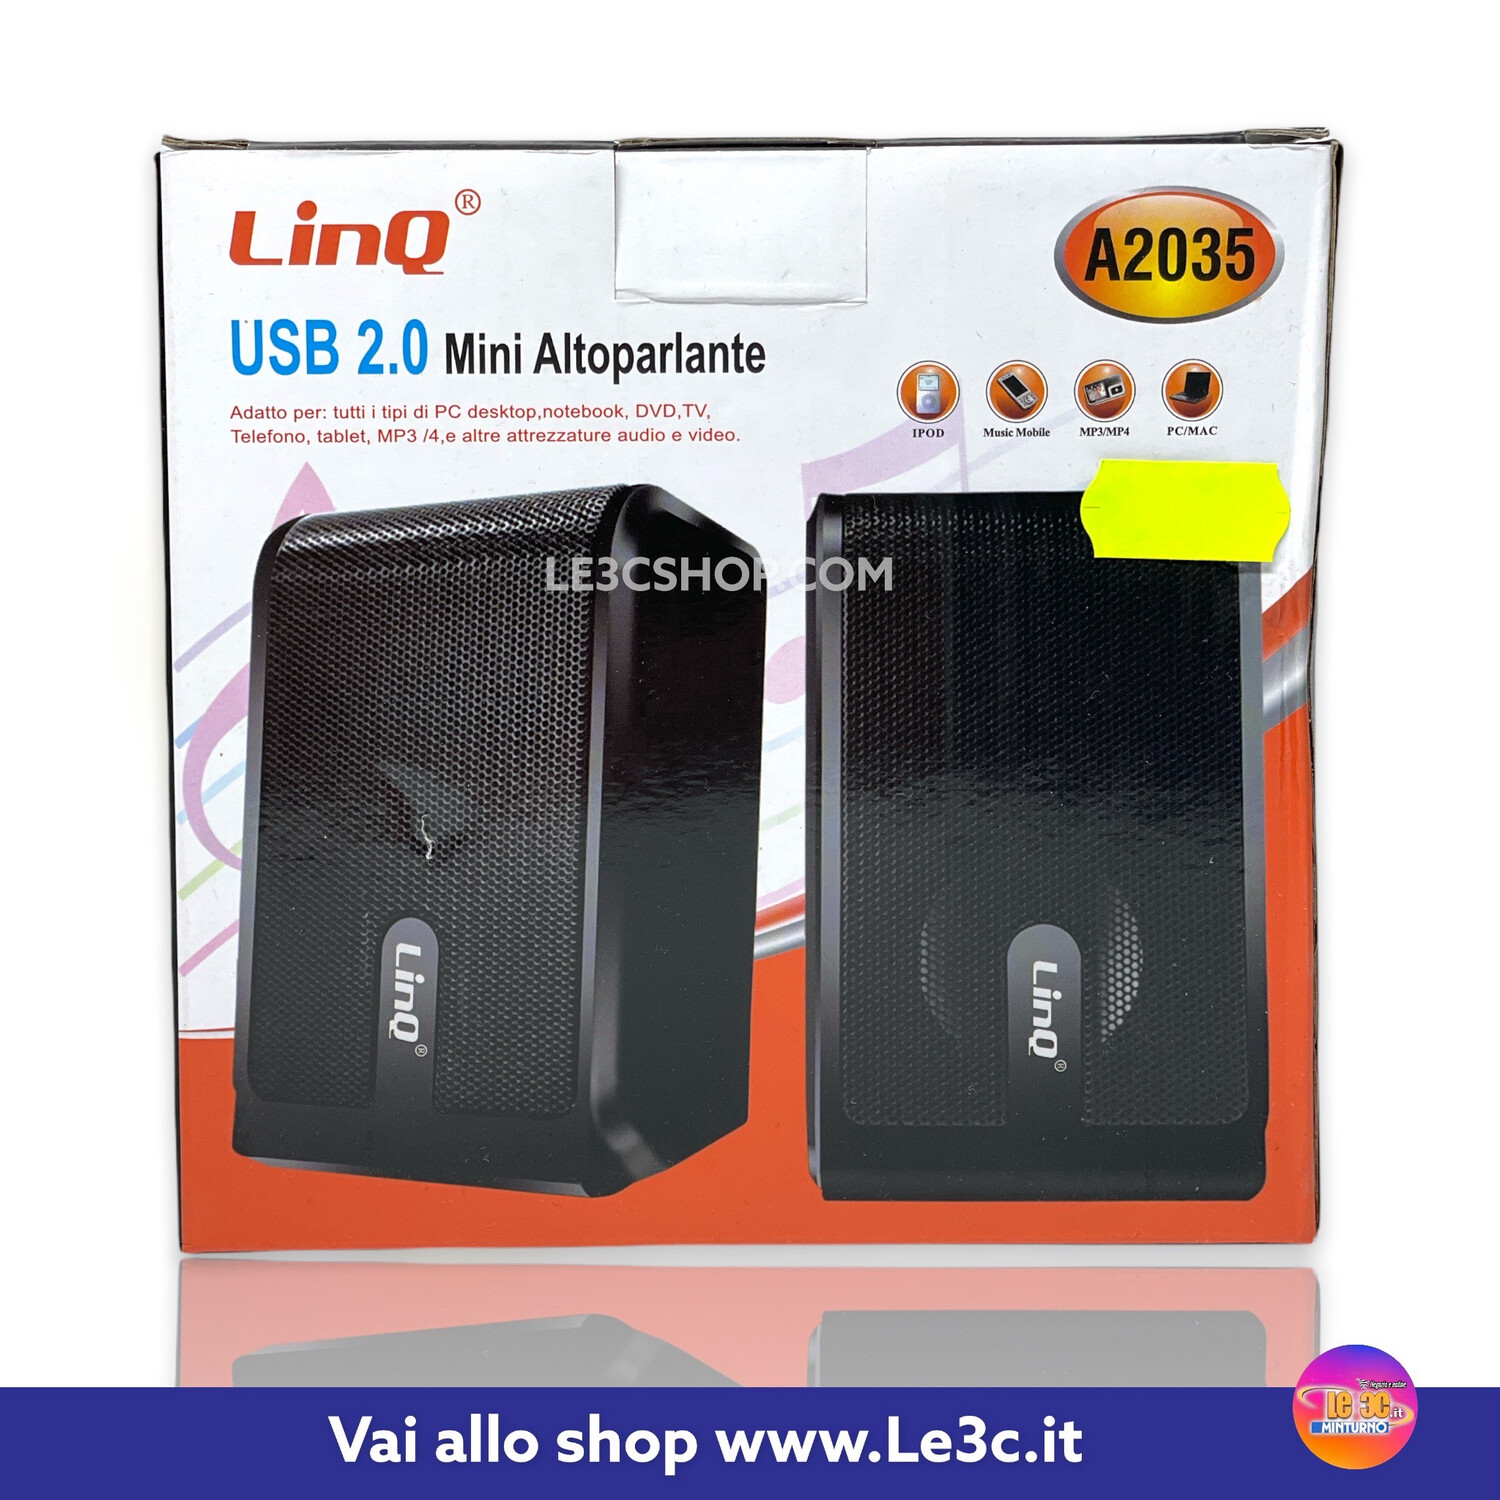 Mini Altoparlante USB 2.0: Audio Stereo di Qualità per PC, TV e Altro Linq A2035